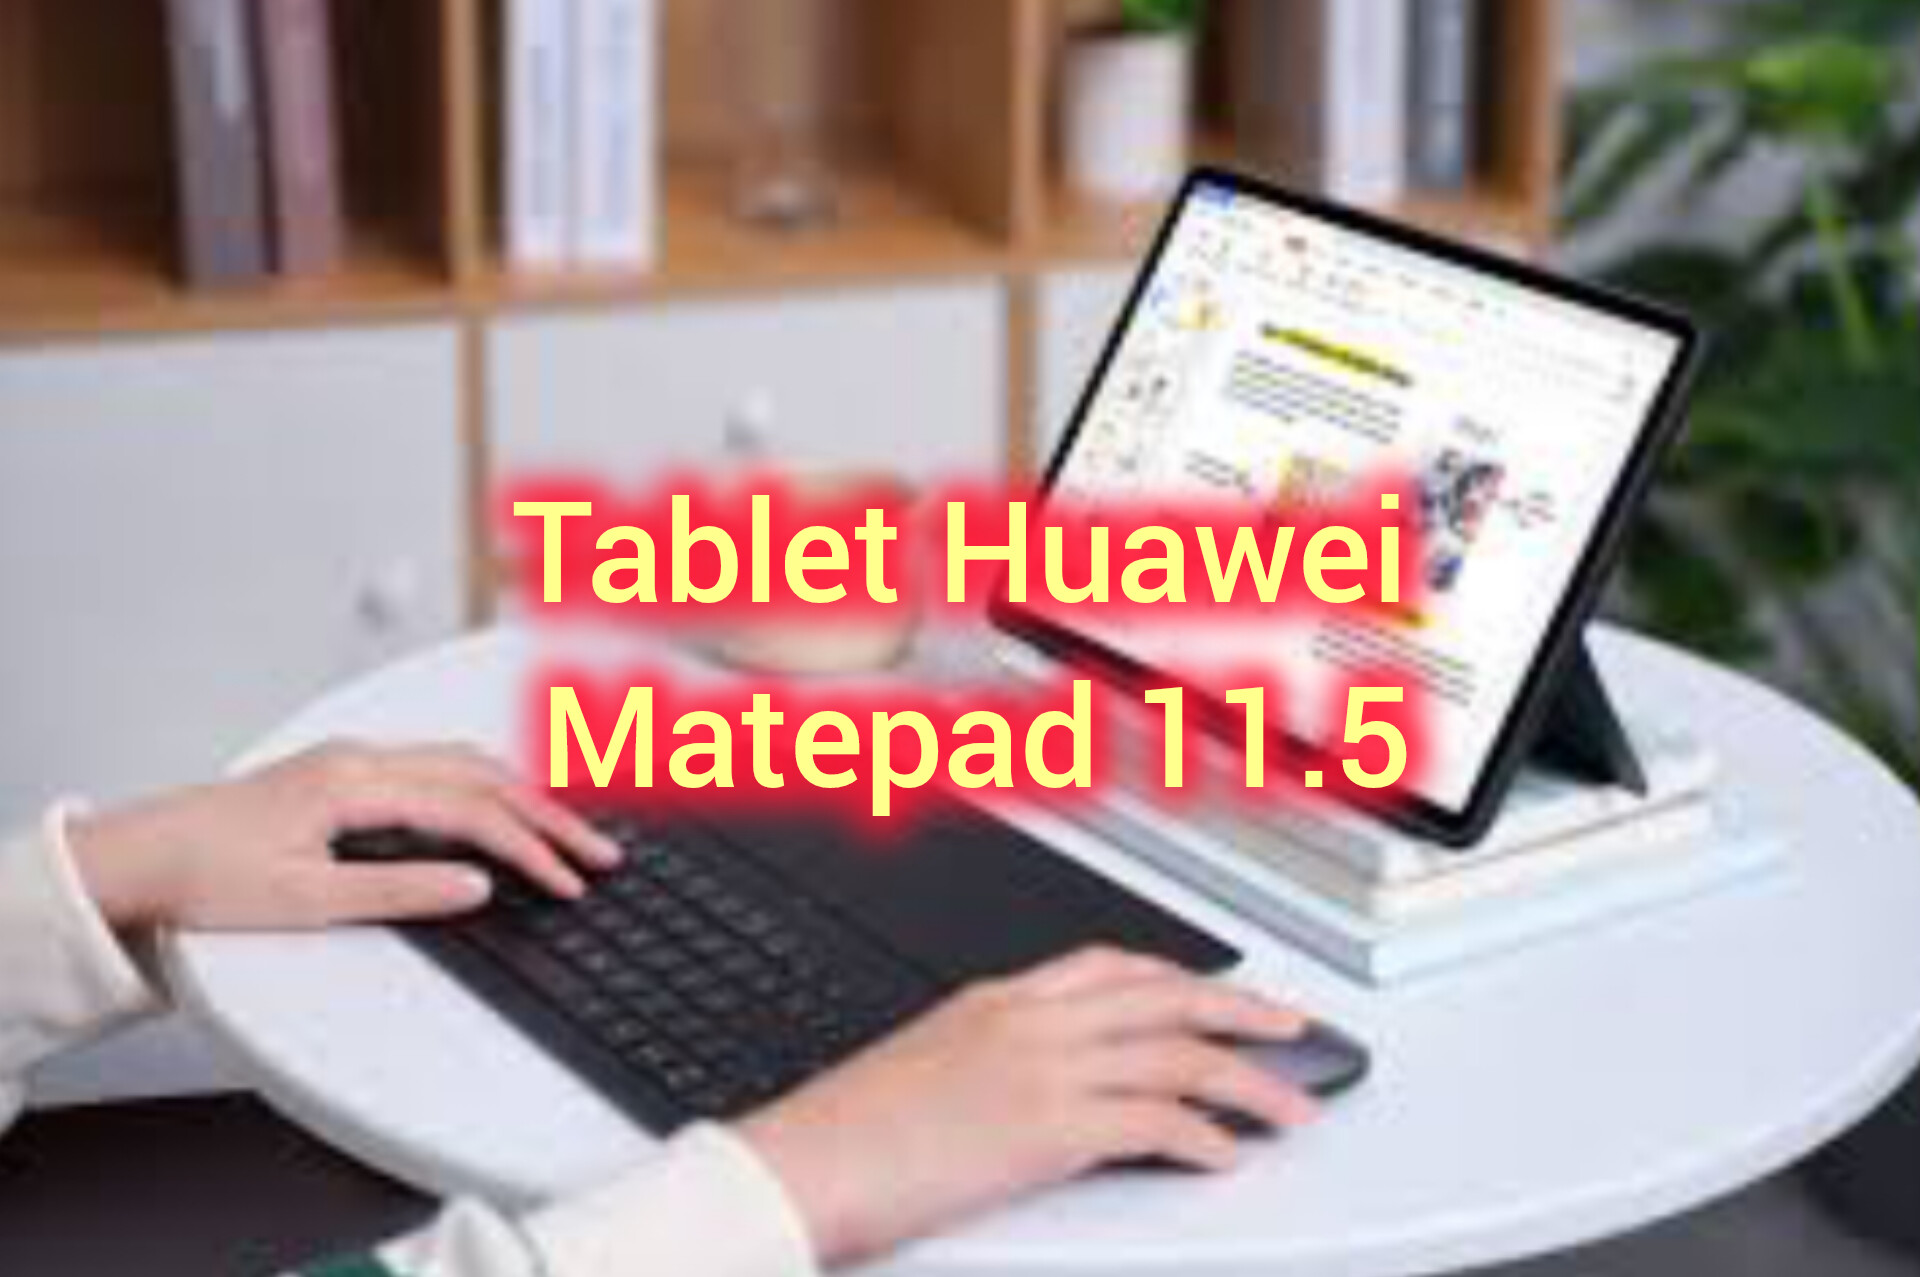 Tablet Huawei Matepad 11.5: Resolusi Layar 2.8K Teknologi Papermatte dengan Fitur Canggih Keyboard Case